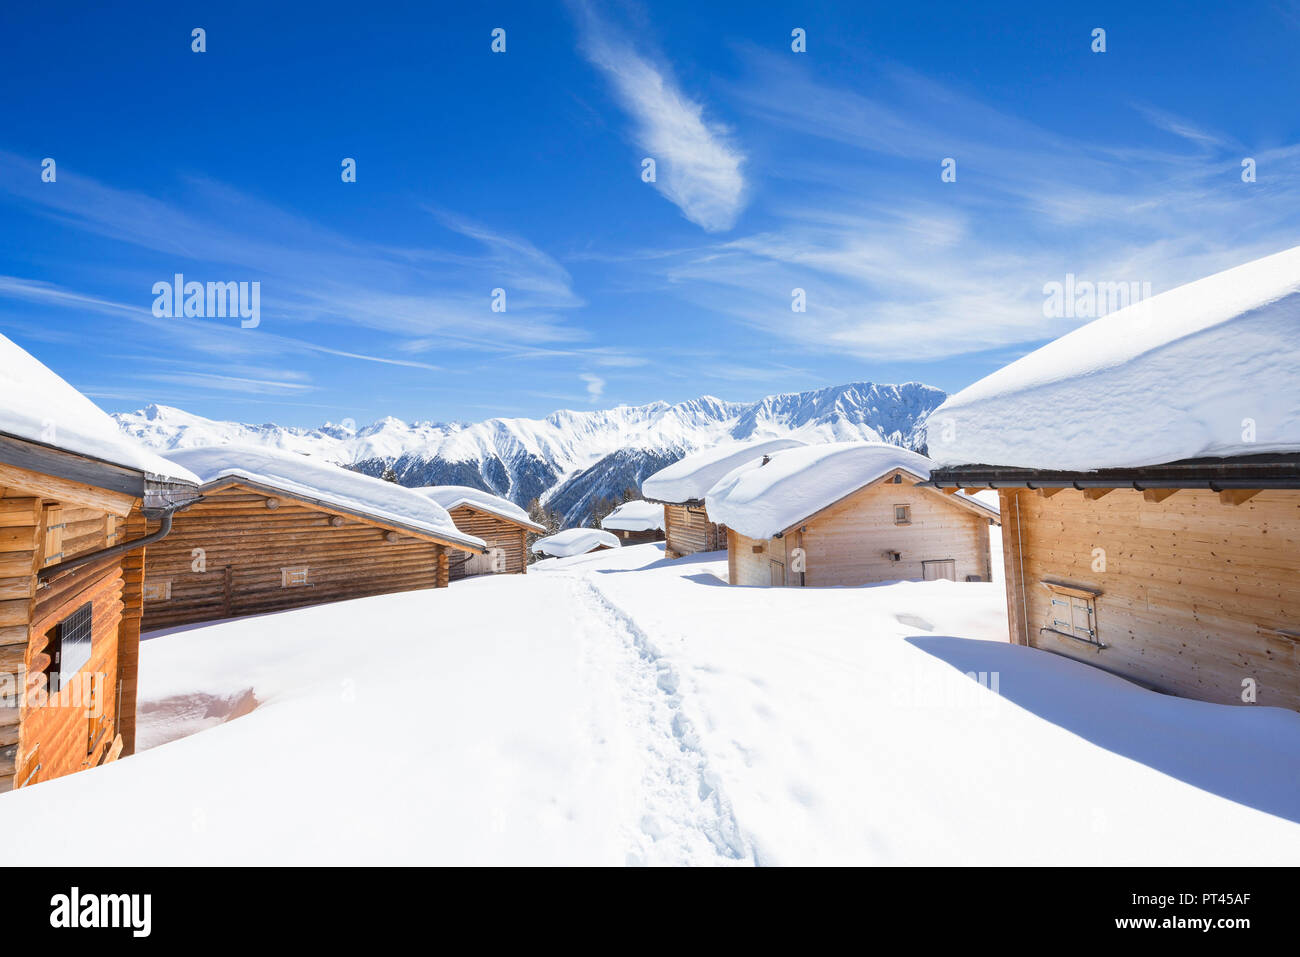 Typical alpine huts after a heavy snowfall, Wiesner Alp, Davos Wiesen, Landwasser Valley, Albula Valley, District of Prattigau / Davos, Canton of Graubünden, Switzerland, Europe, Stock Photo